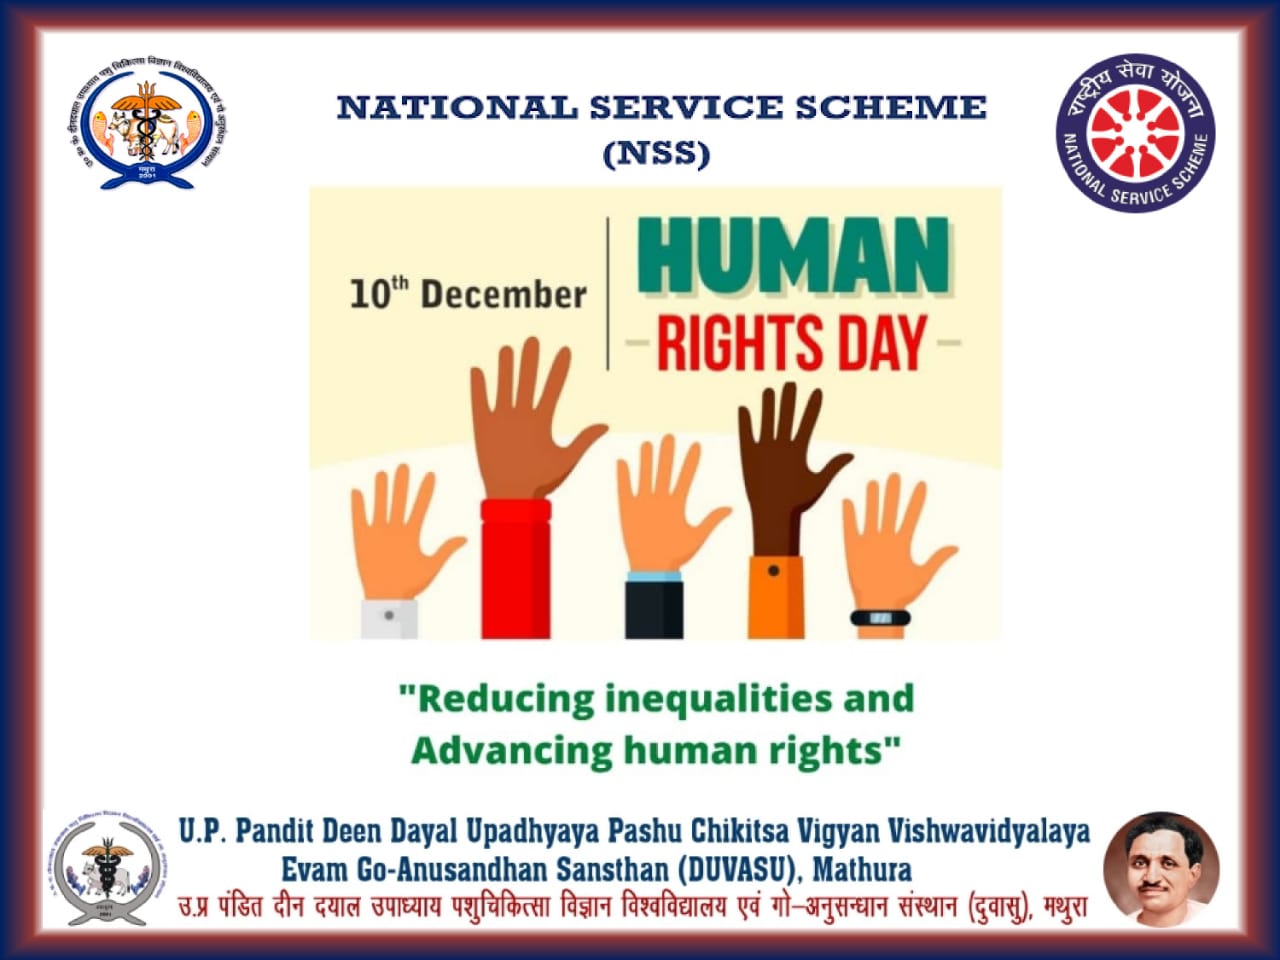 आज विश्व मानवाधिकार दिवस पर विश्वविद्यालय की राष्ट्रीय सेवा योजना ( NSS) इकाई  द्वारा छात्र एवं छात्रों को मानव के अधिकारों के बारे में जागरूक किया